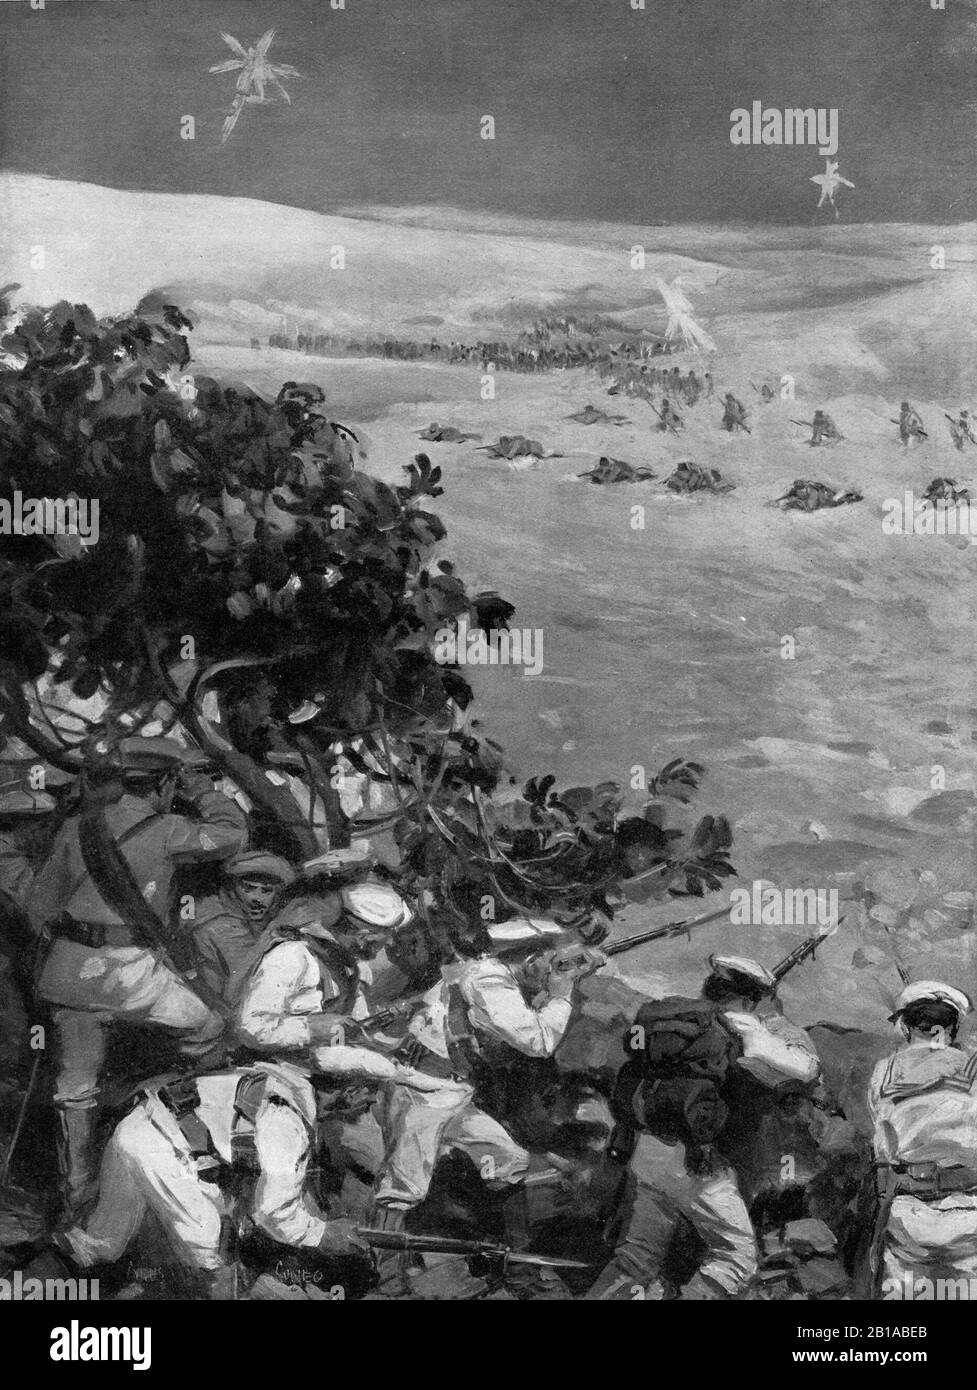 Une illustration vers 1911 des marins de la Marine royale italienne se défendant contre une attaque de l'armée ottomane turque devant Tripoli dans la nuit du 9 octobre 1911 en Libye pendant la guerre turque italienne de 1911 à 1912. Banque D'Images